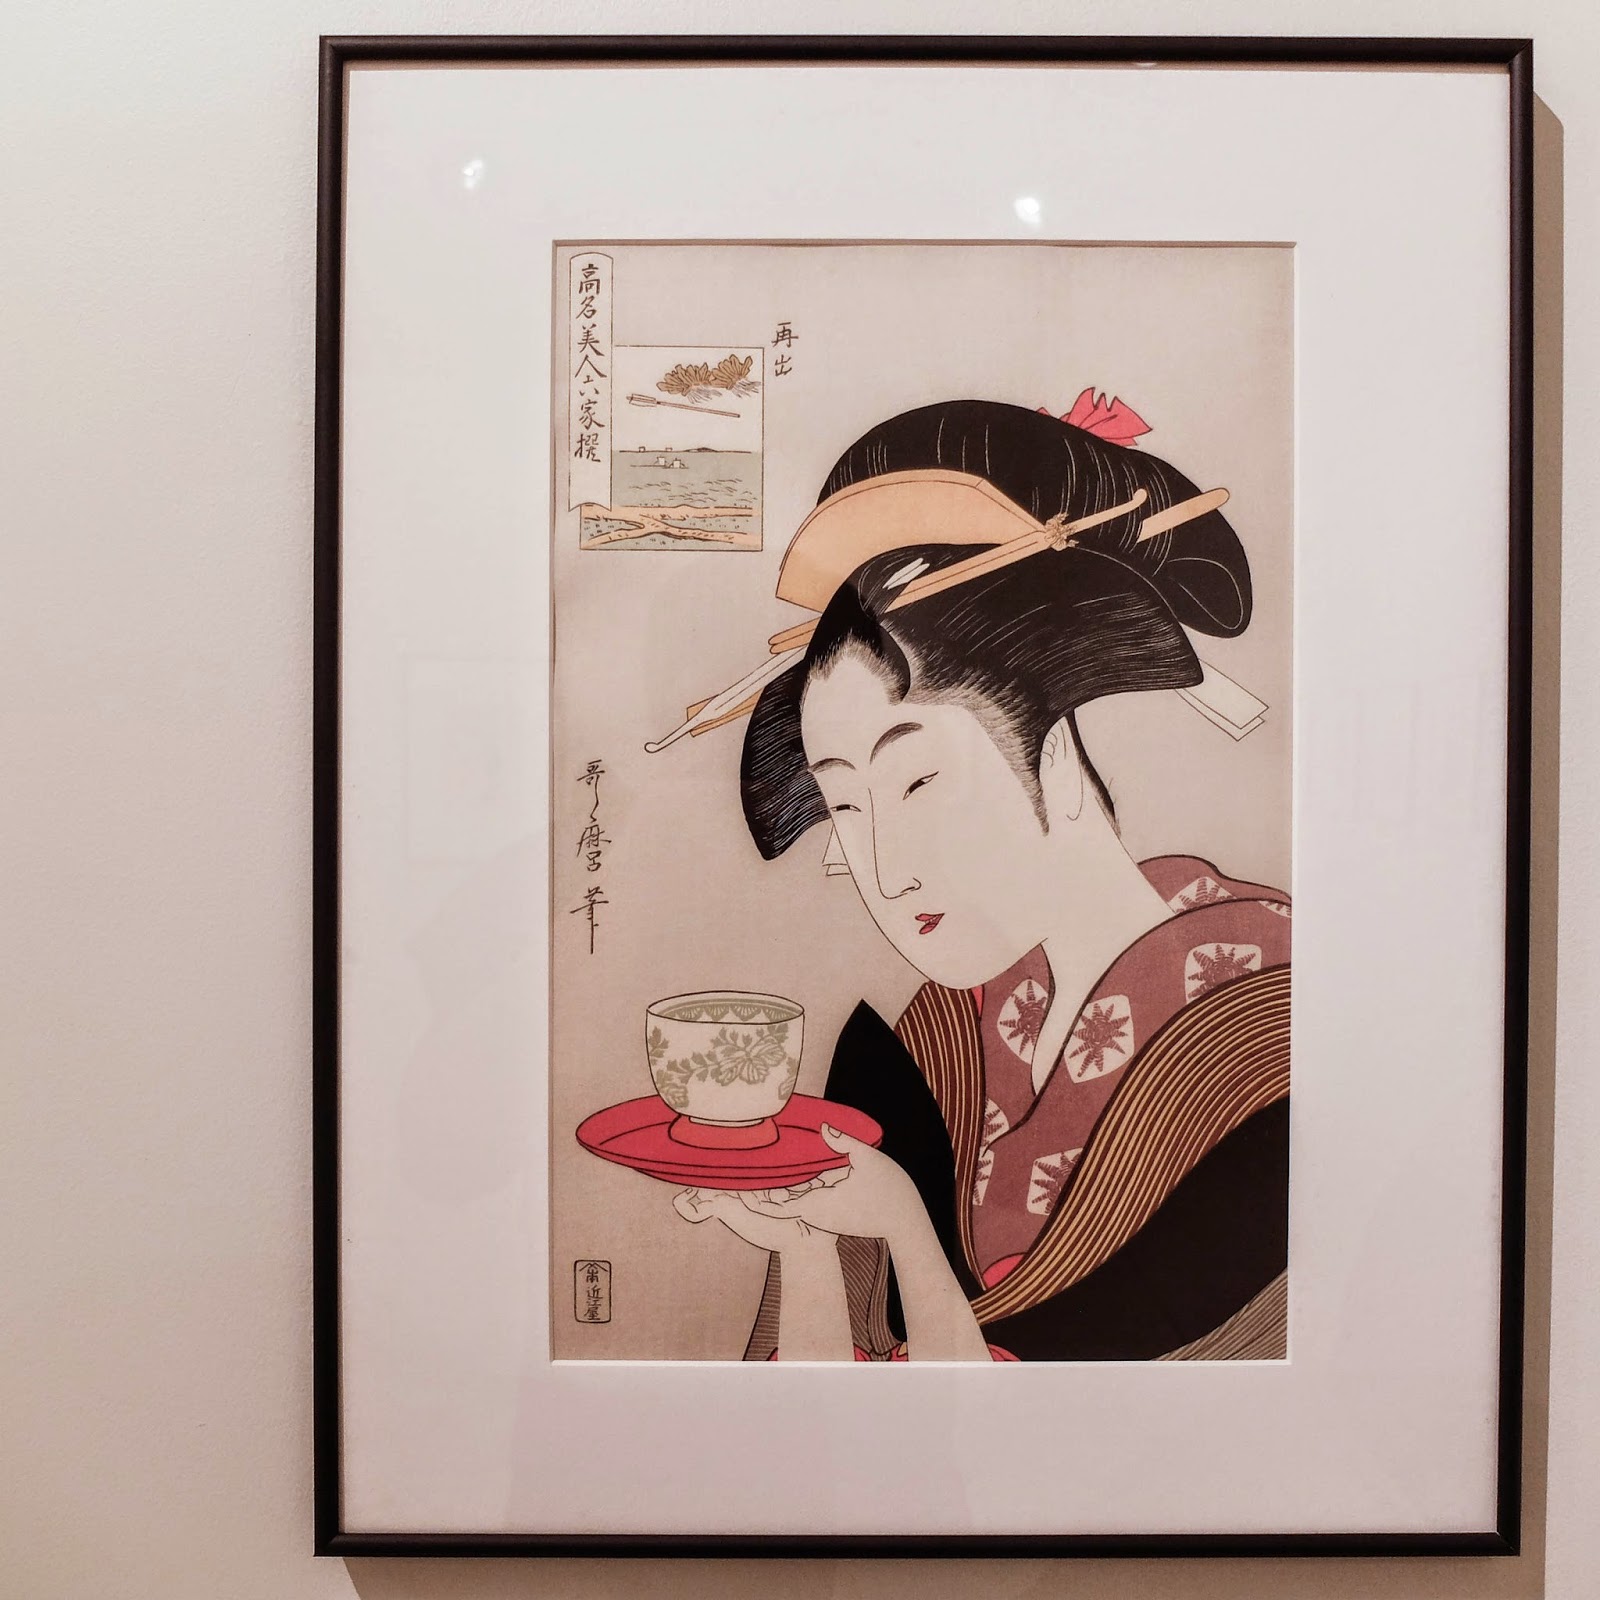 Ukiyoe Portraits exhibit - Okita of Naniwaya from the series "Six Famous Beauties" by Utamaro Kitagawa